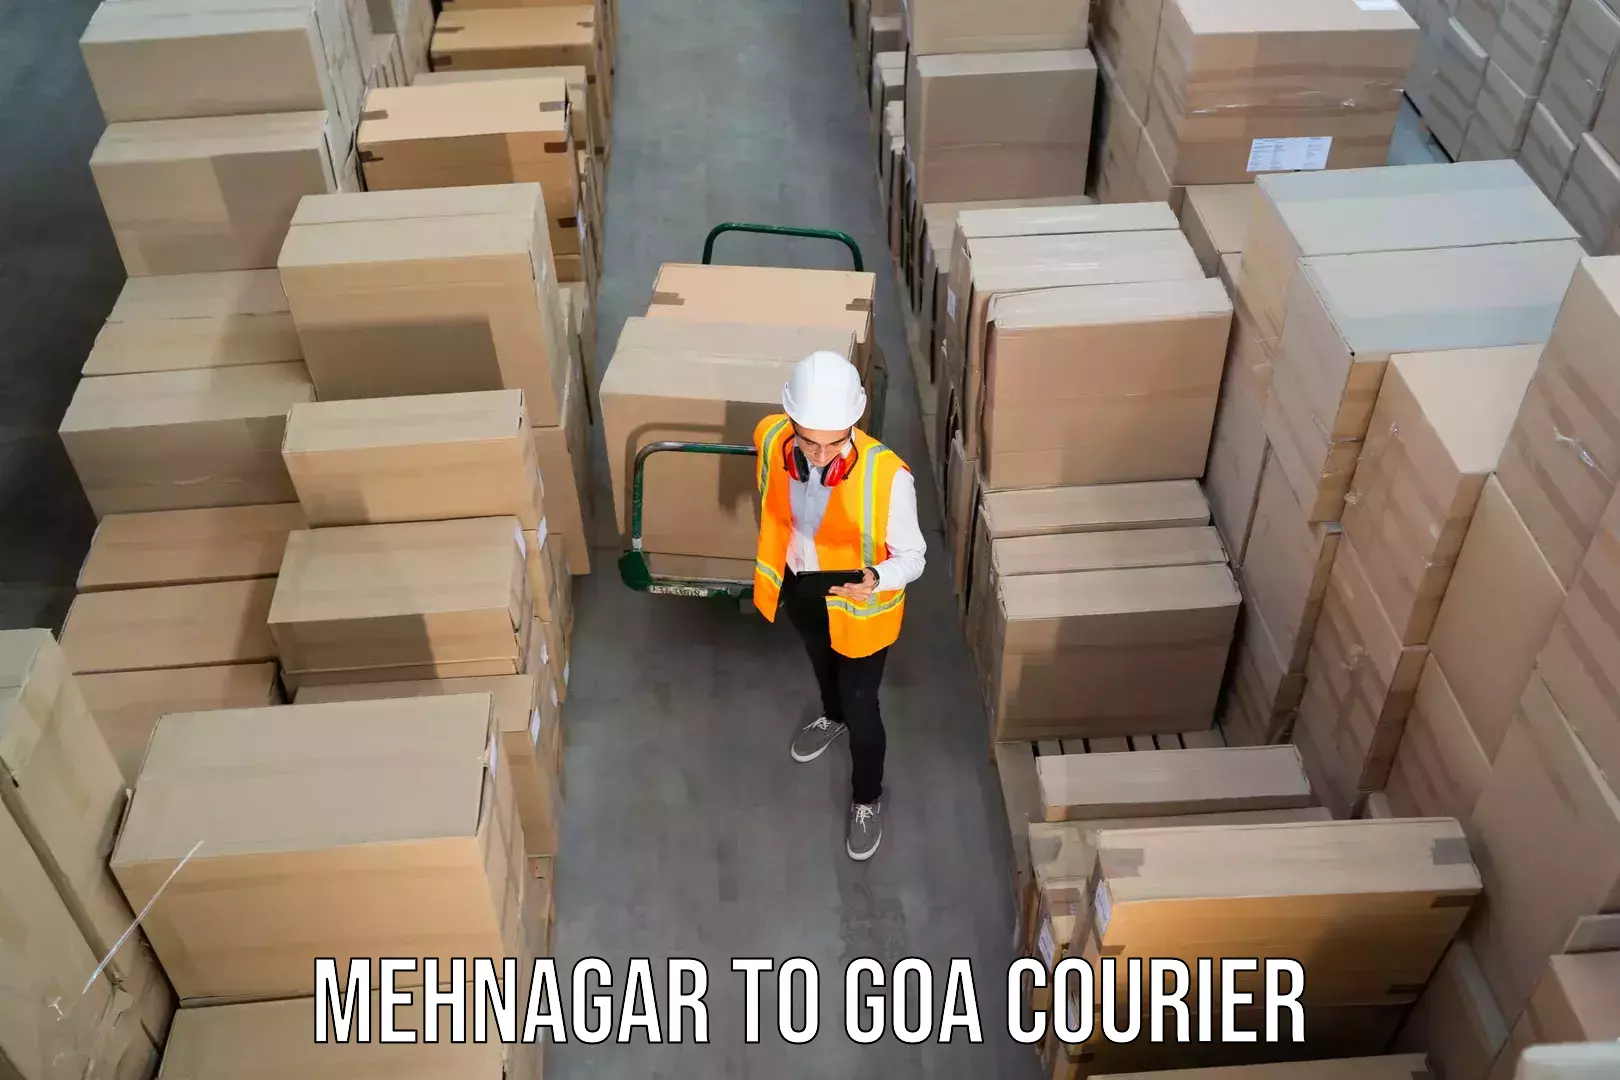 Express courier facilities Mehnagar to NIT Goa